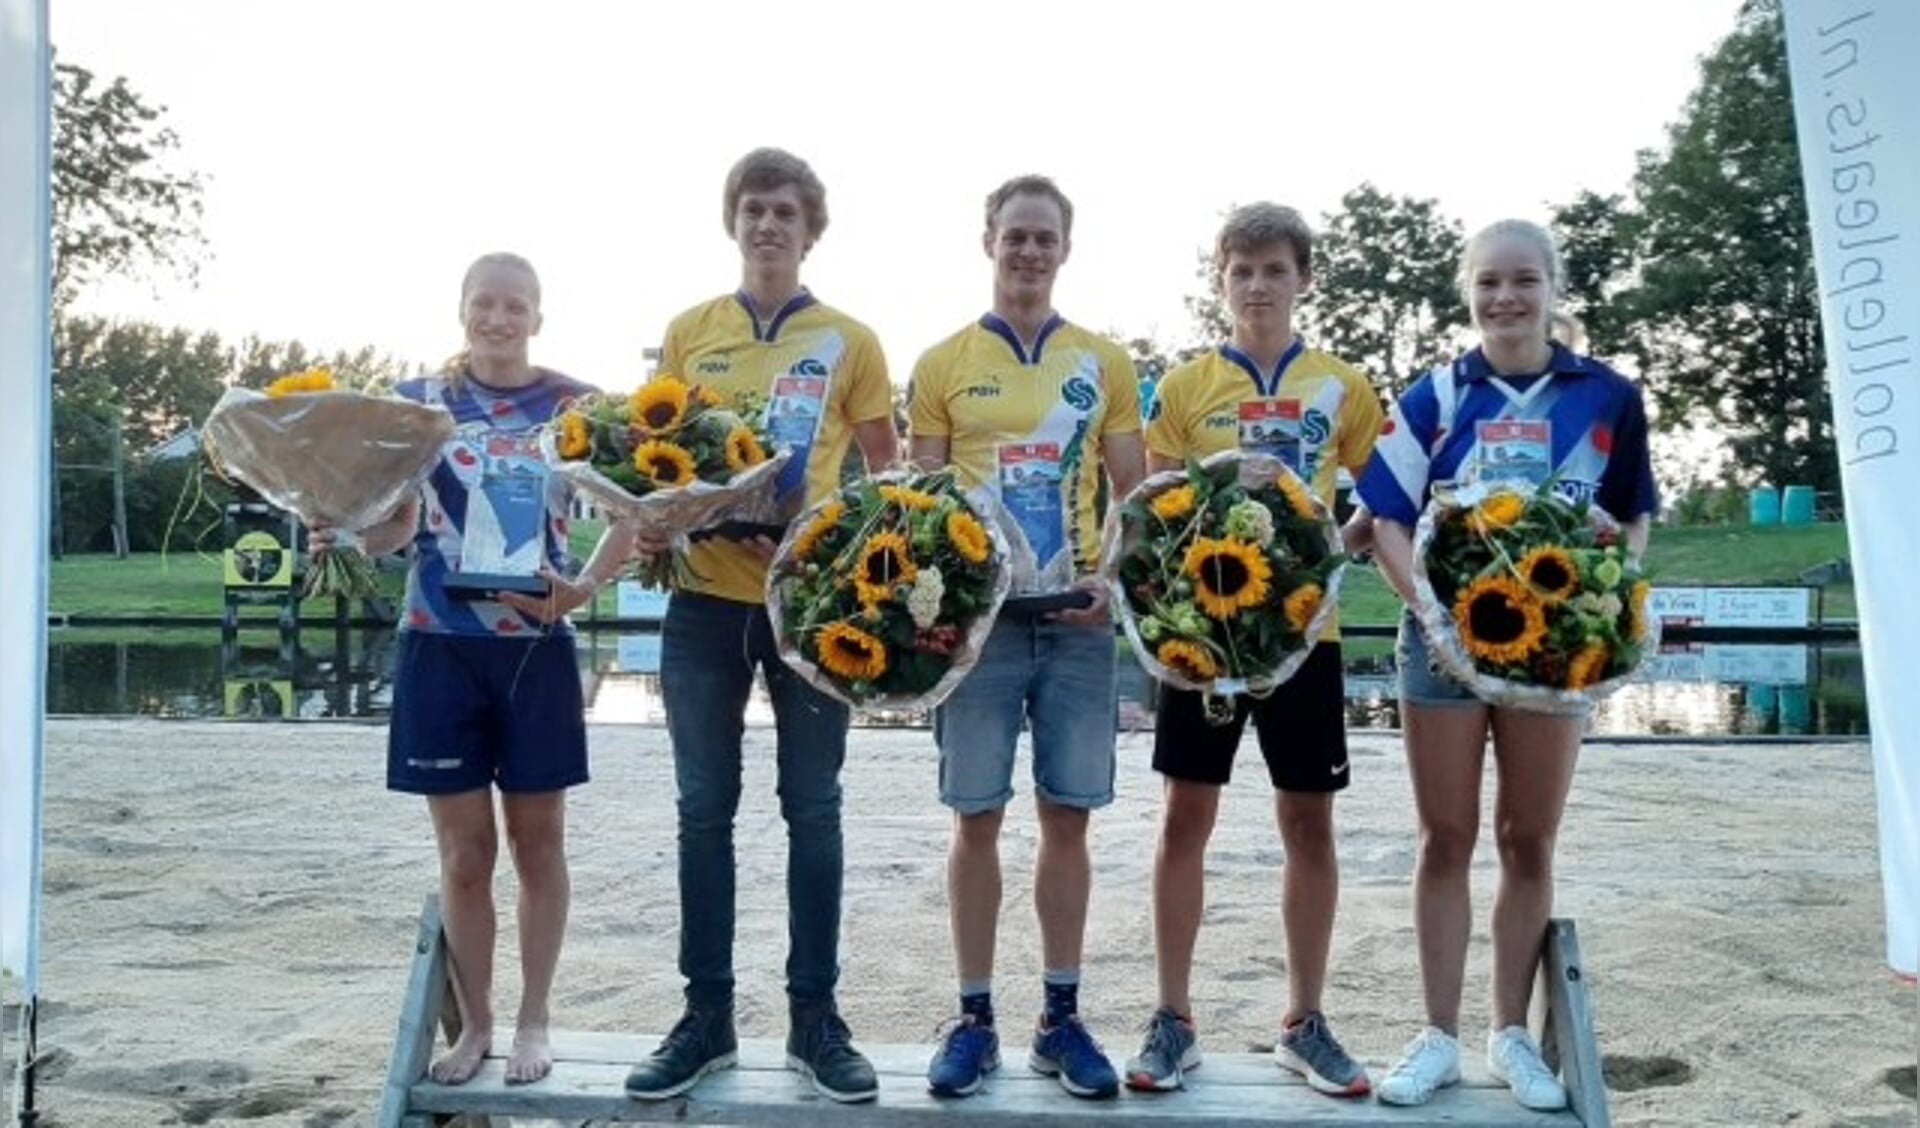 De winnaars van het slotstuk van de Nationale Competitie Polsstokspringen. Zaterdag wacht het NK. (Foto: PB Holland)